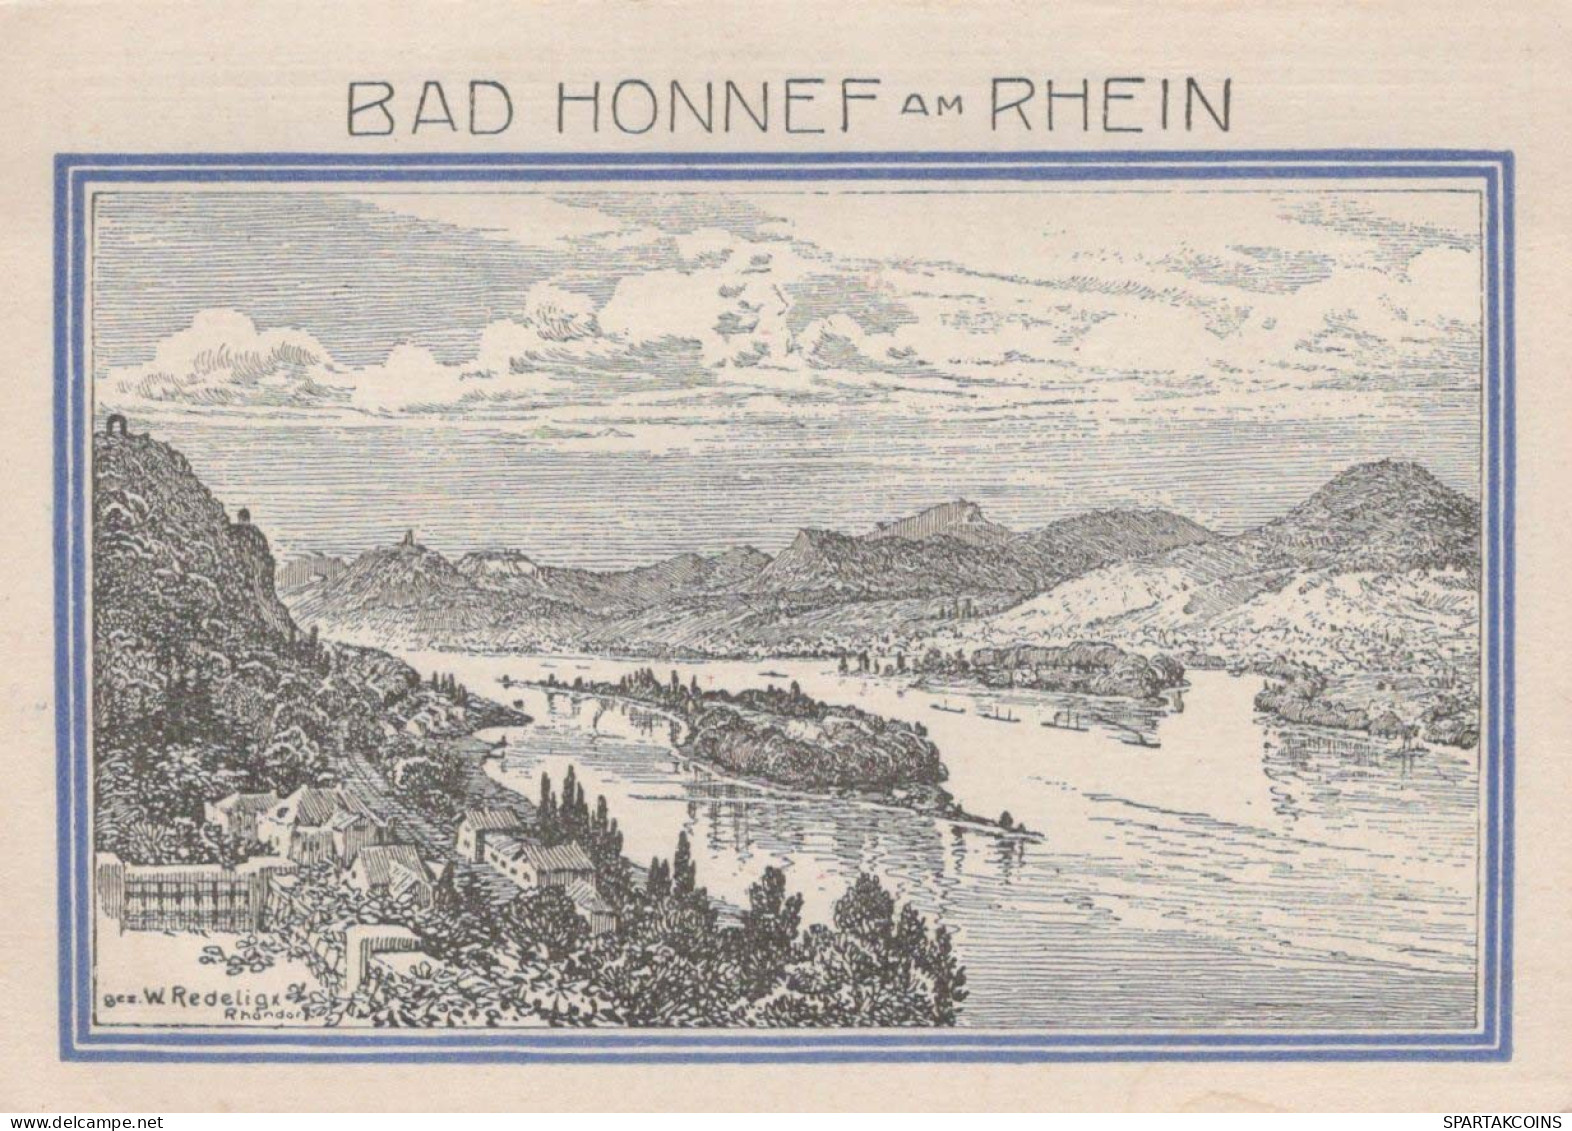 99 PFENNIG 1921 Stadt BAD HONNEF Rhine UNC DEUTSCHLAND Notgeld Banknote #PI480 - [11] Lokale Uitgaven